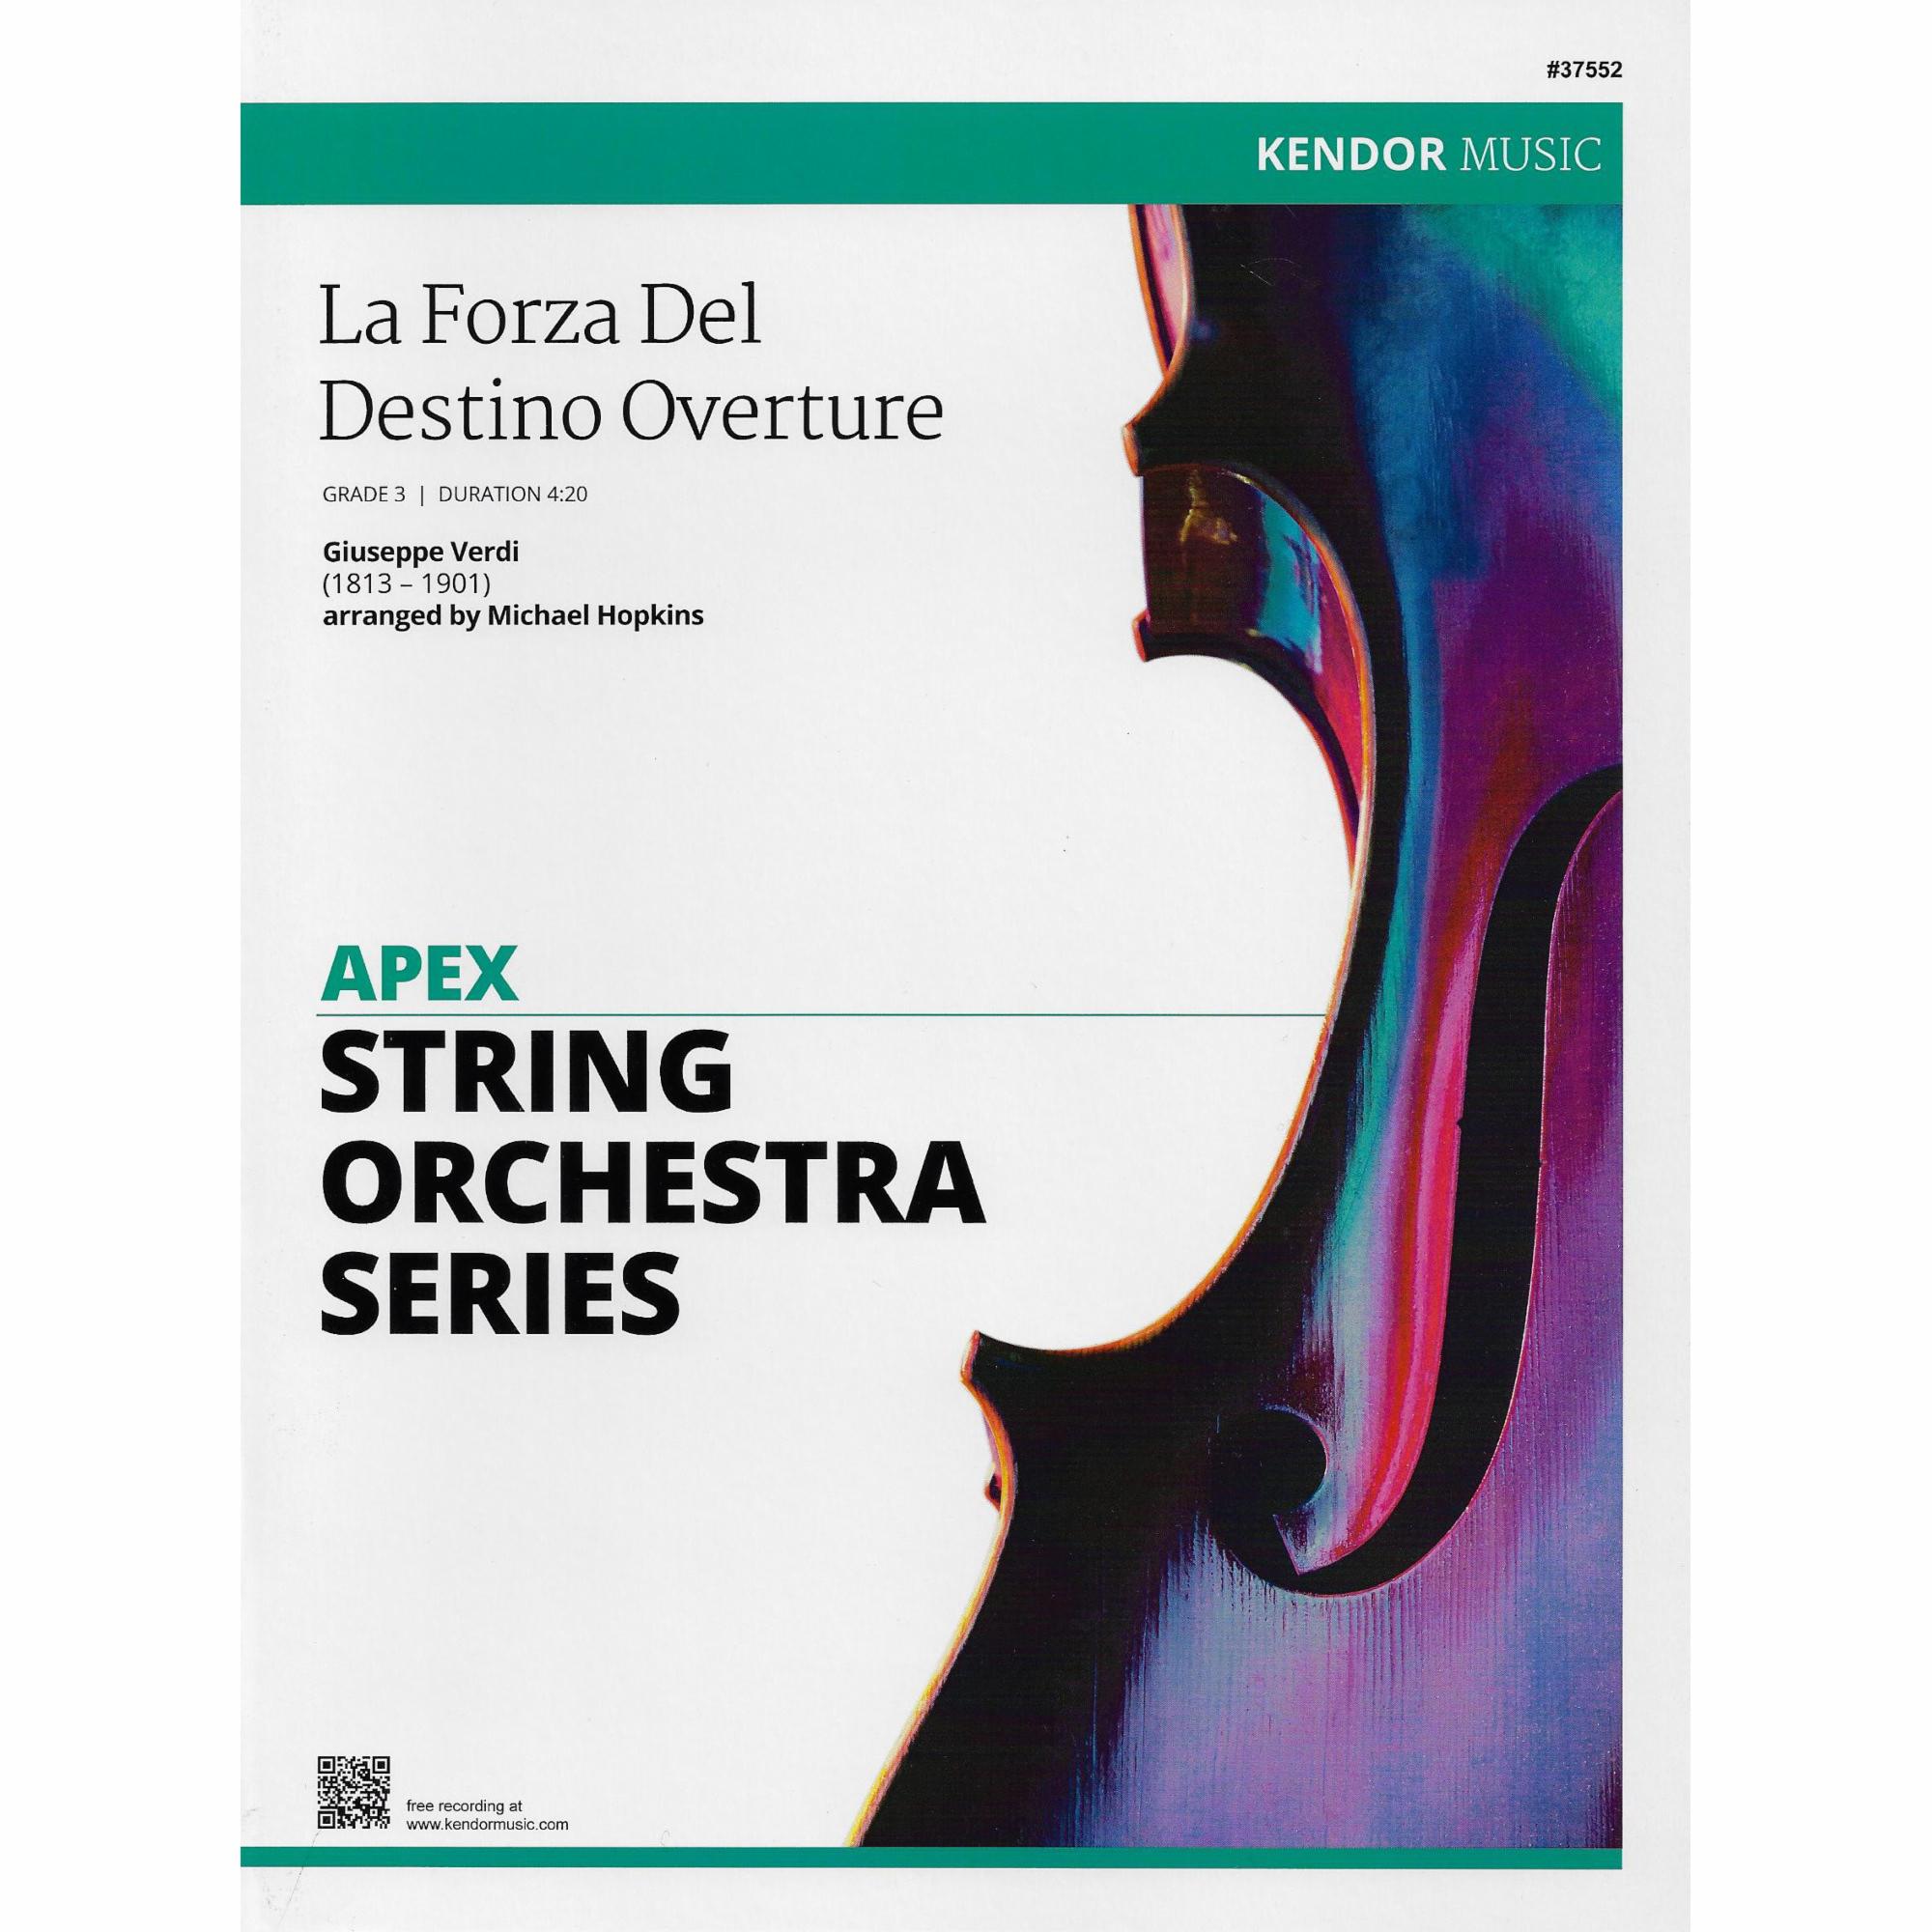 La Forza Del Destino Overture for String Orchestra